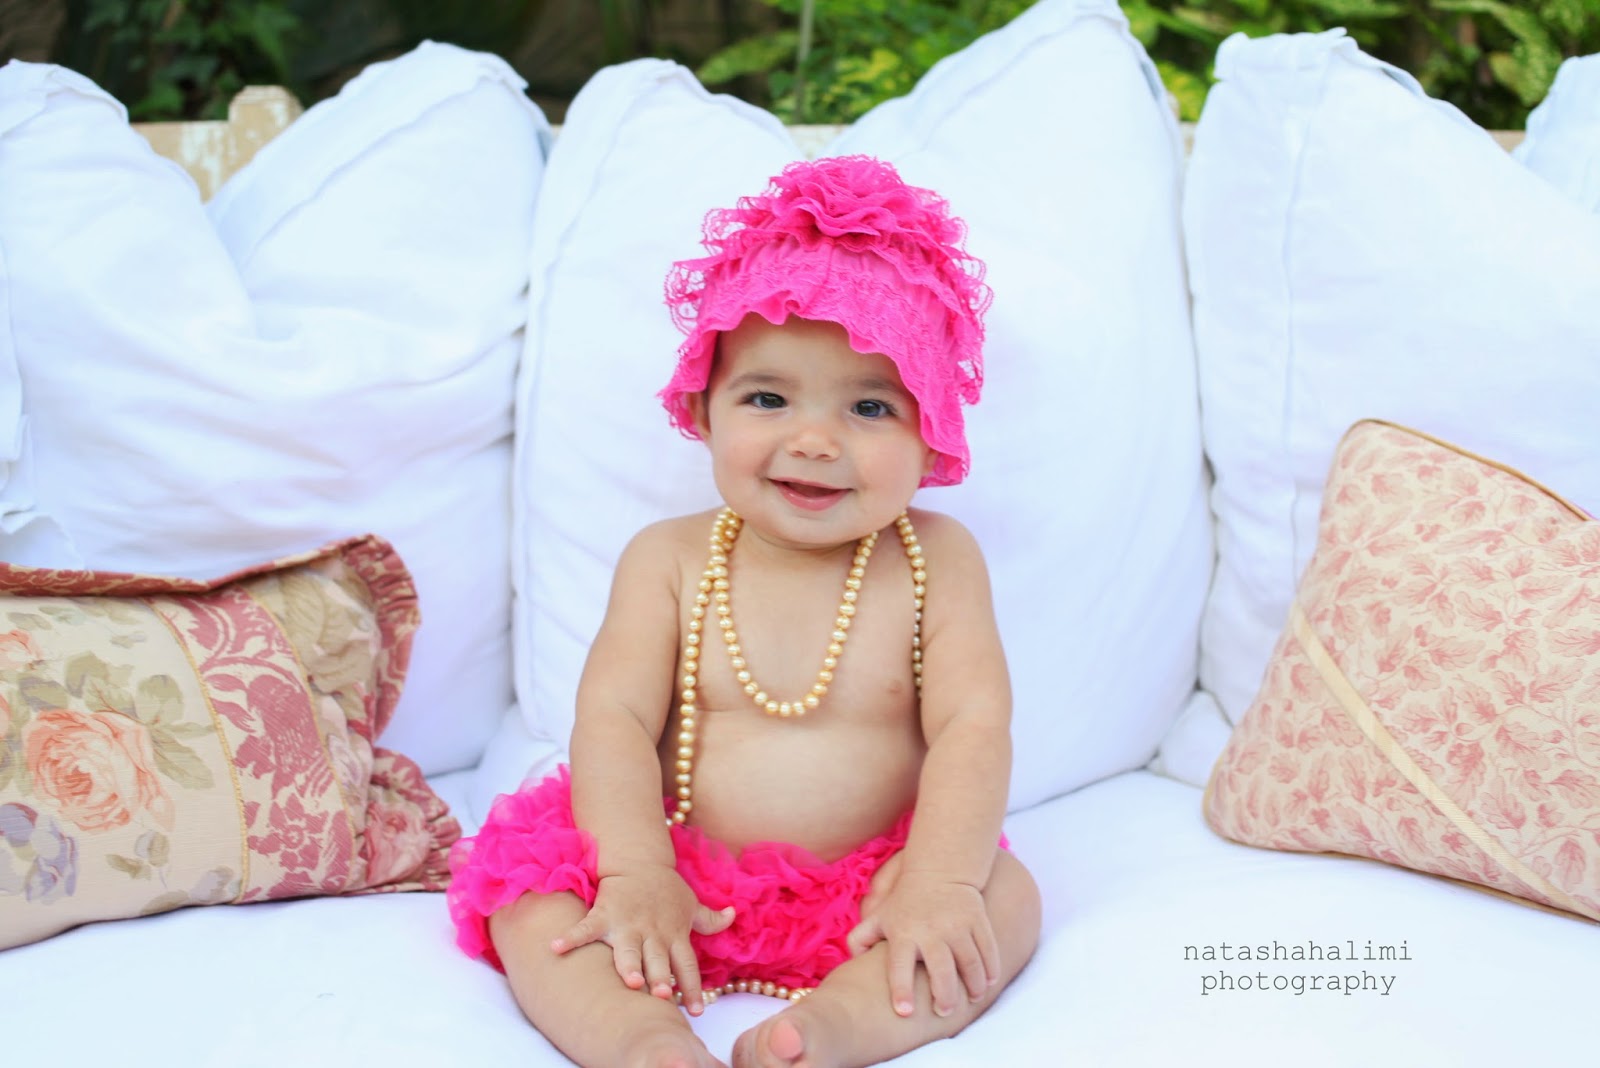 Natasha Halimi Photography Blog!: Little Miss Shabby Chic